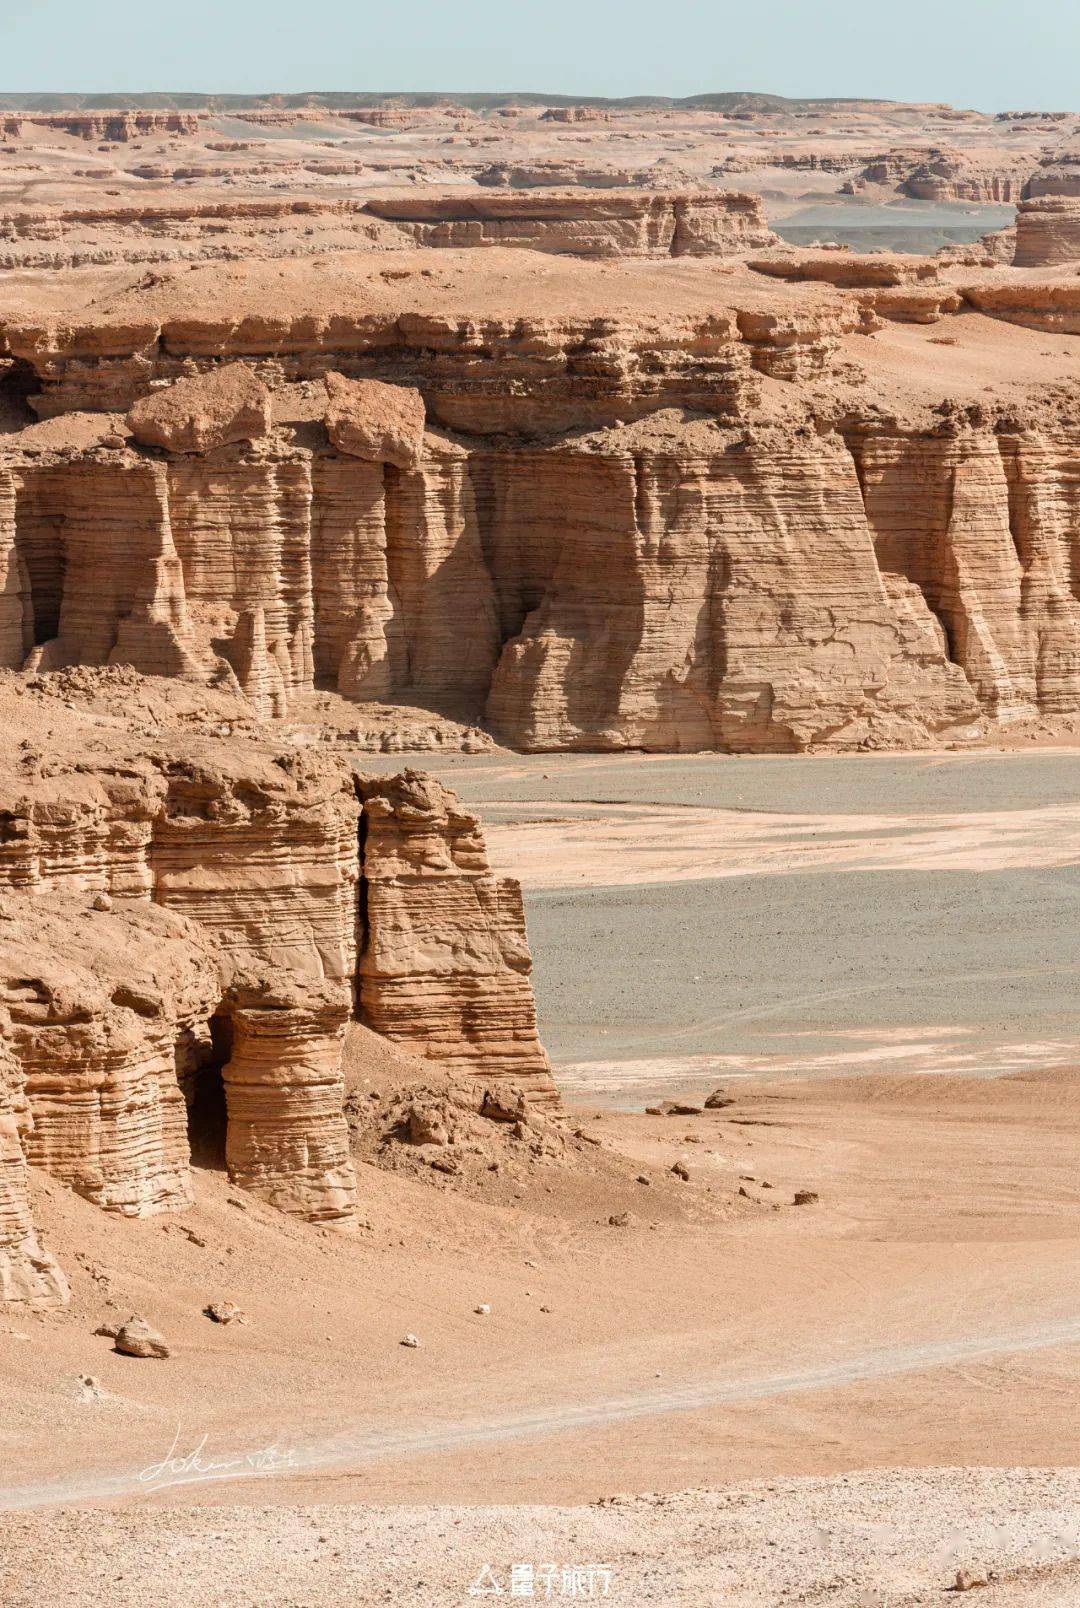 五一新疆勇闯大海道神秘人文东疆沙漠戈壁雅丹穿越无人区的越野之旅